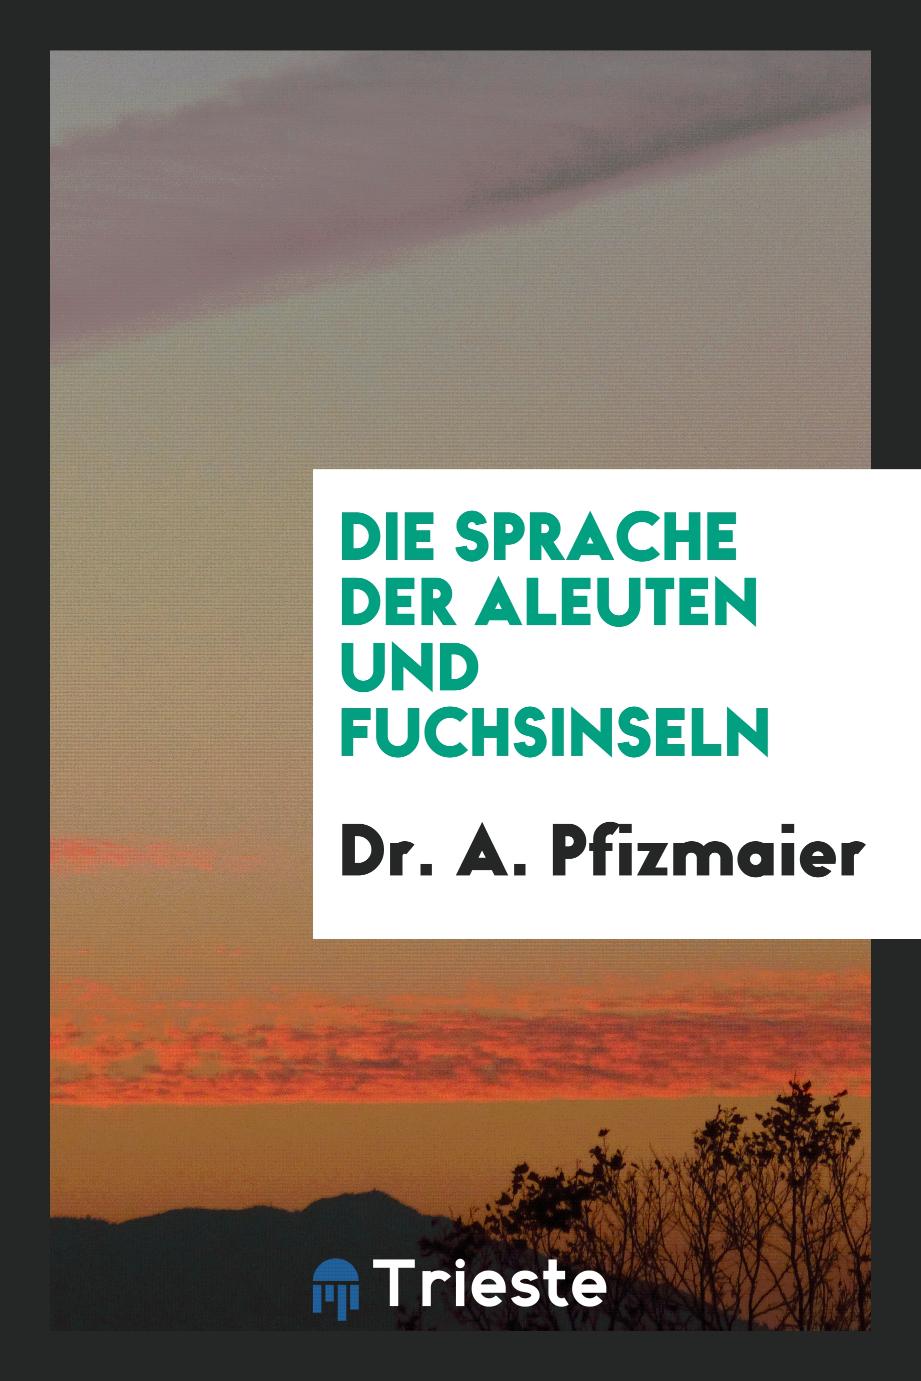 Dr. A. Pfizmaier - Die Sprache der Aleuten und Fuchsinseln